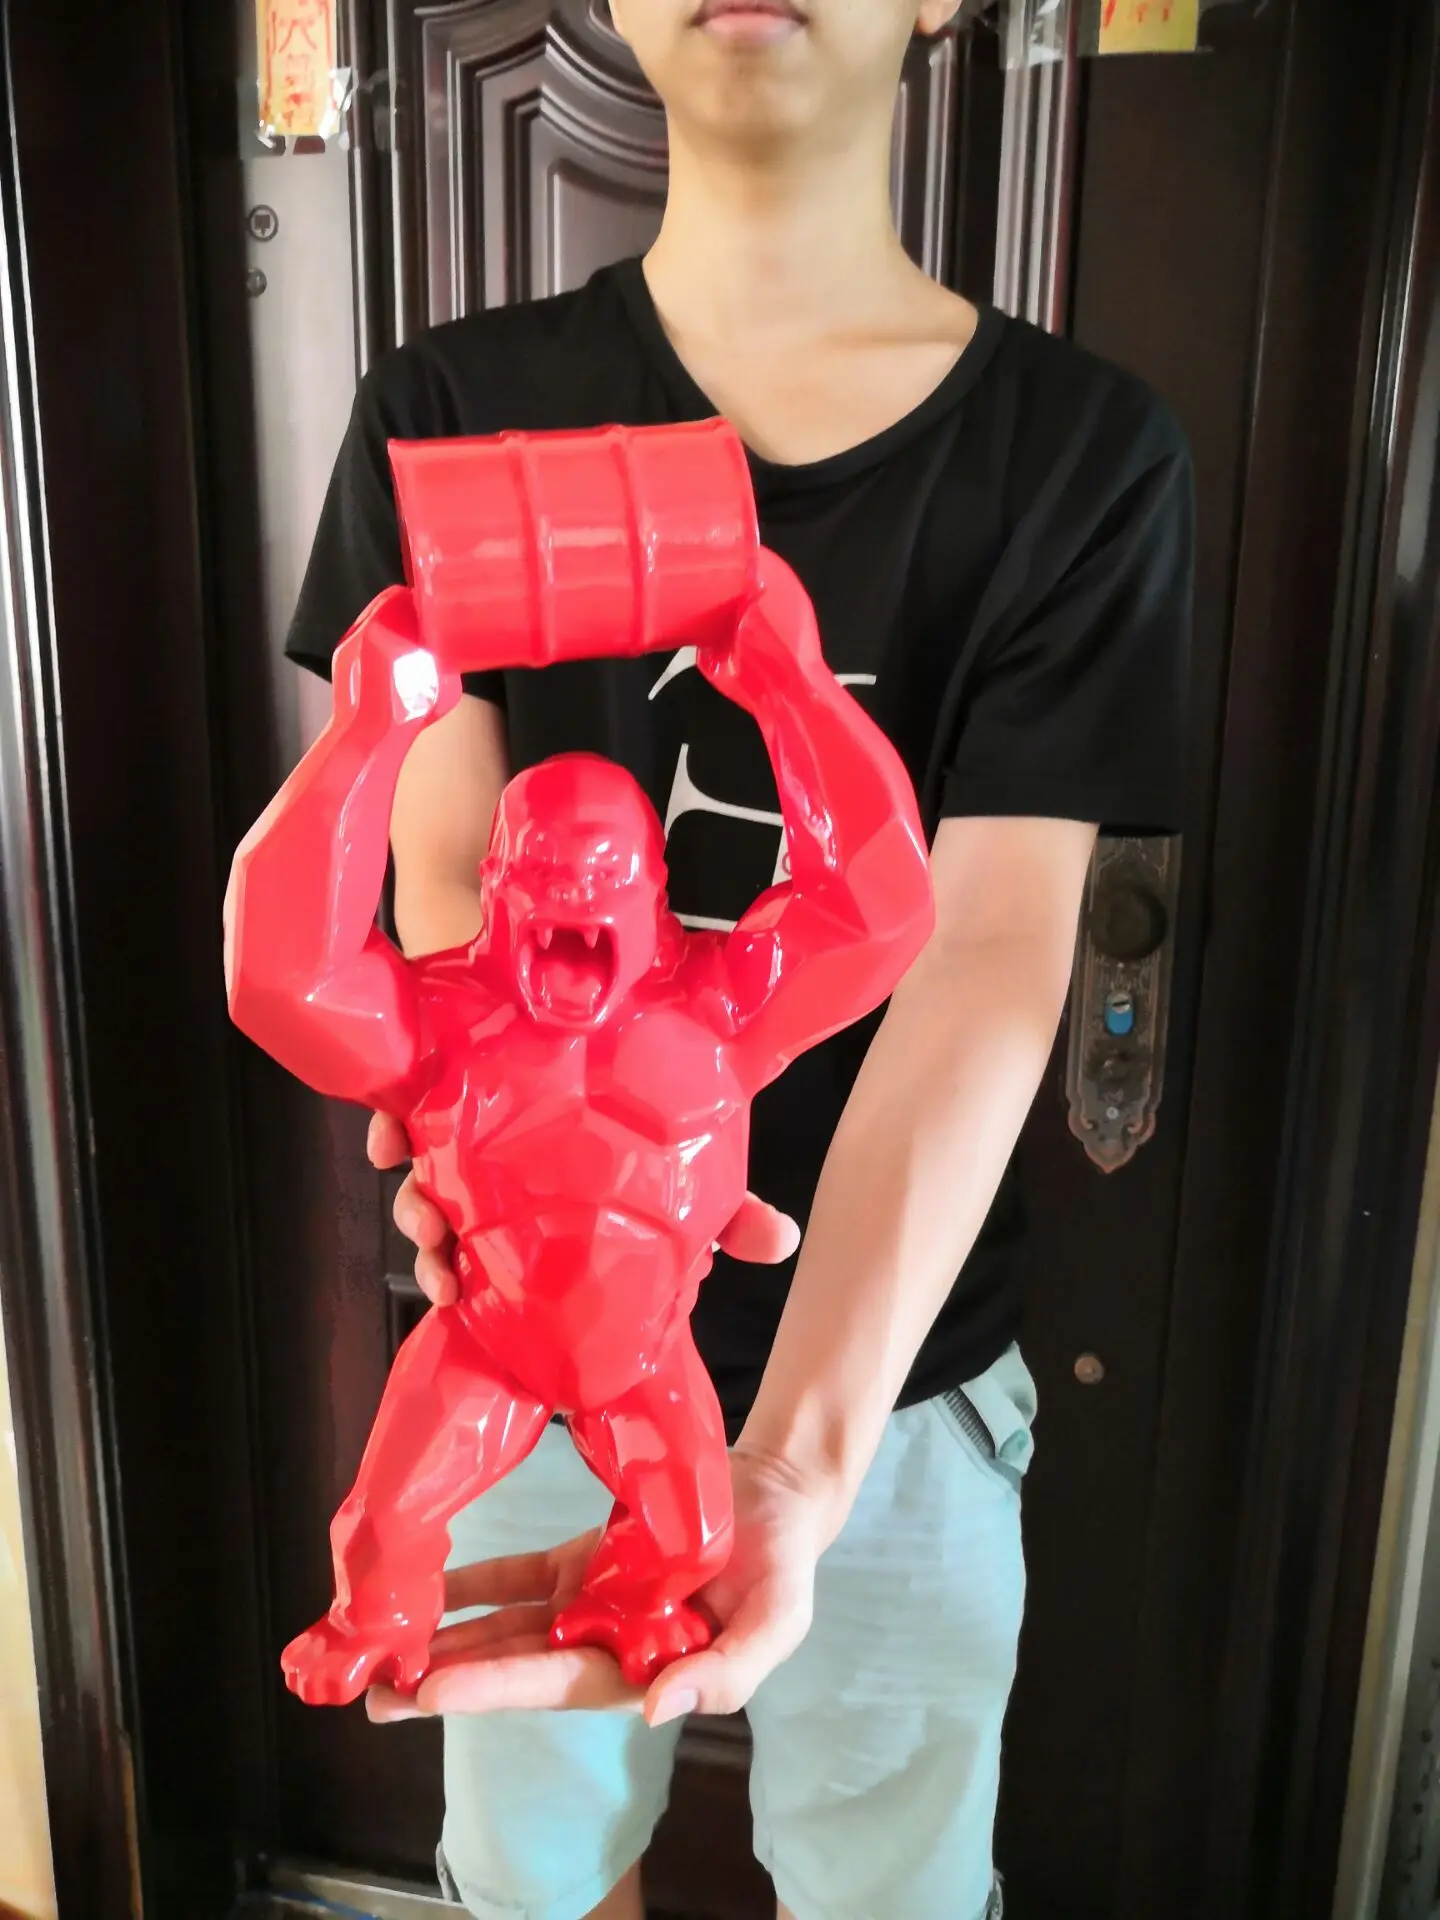 2" моделирование Искусство ремесло статуя животного Горилла бюст креативное украшение резиновая фигурка героя Коллекционная модель игрушечная коробка 62 см Z2069